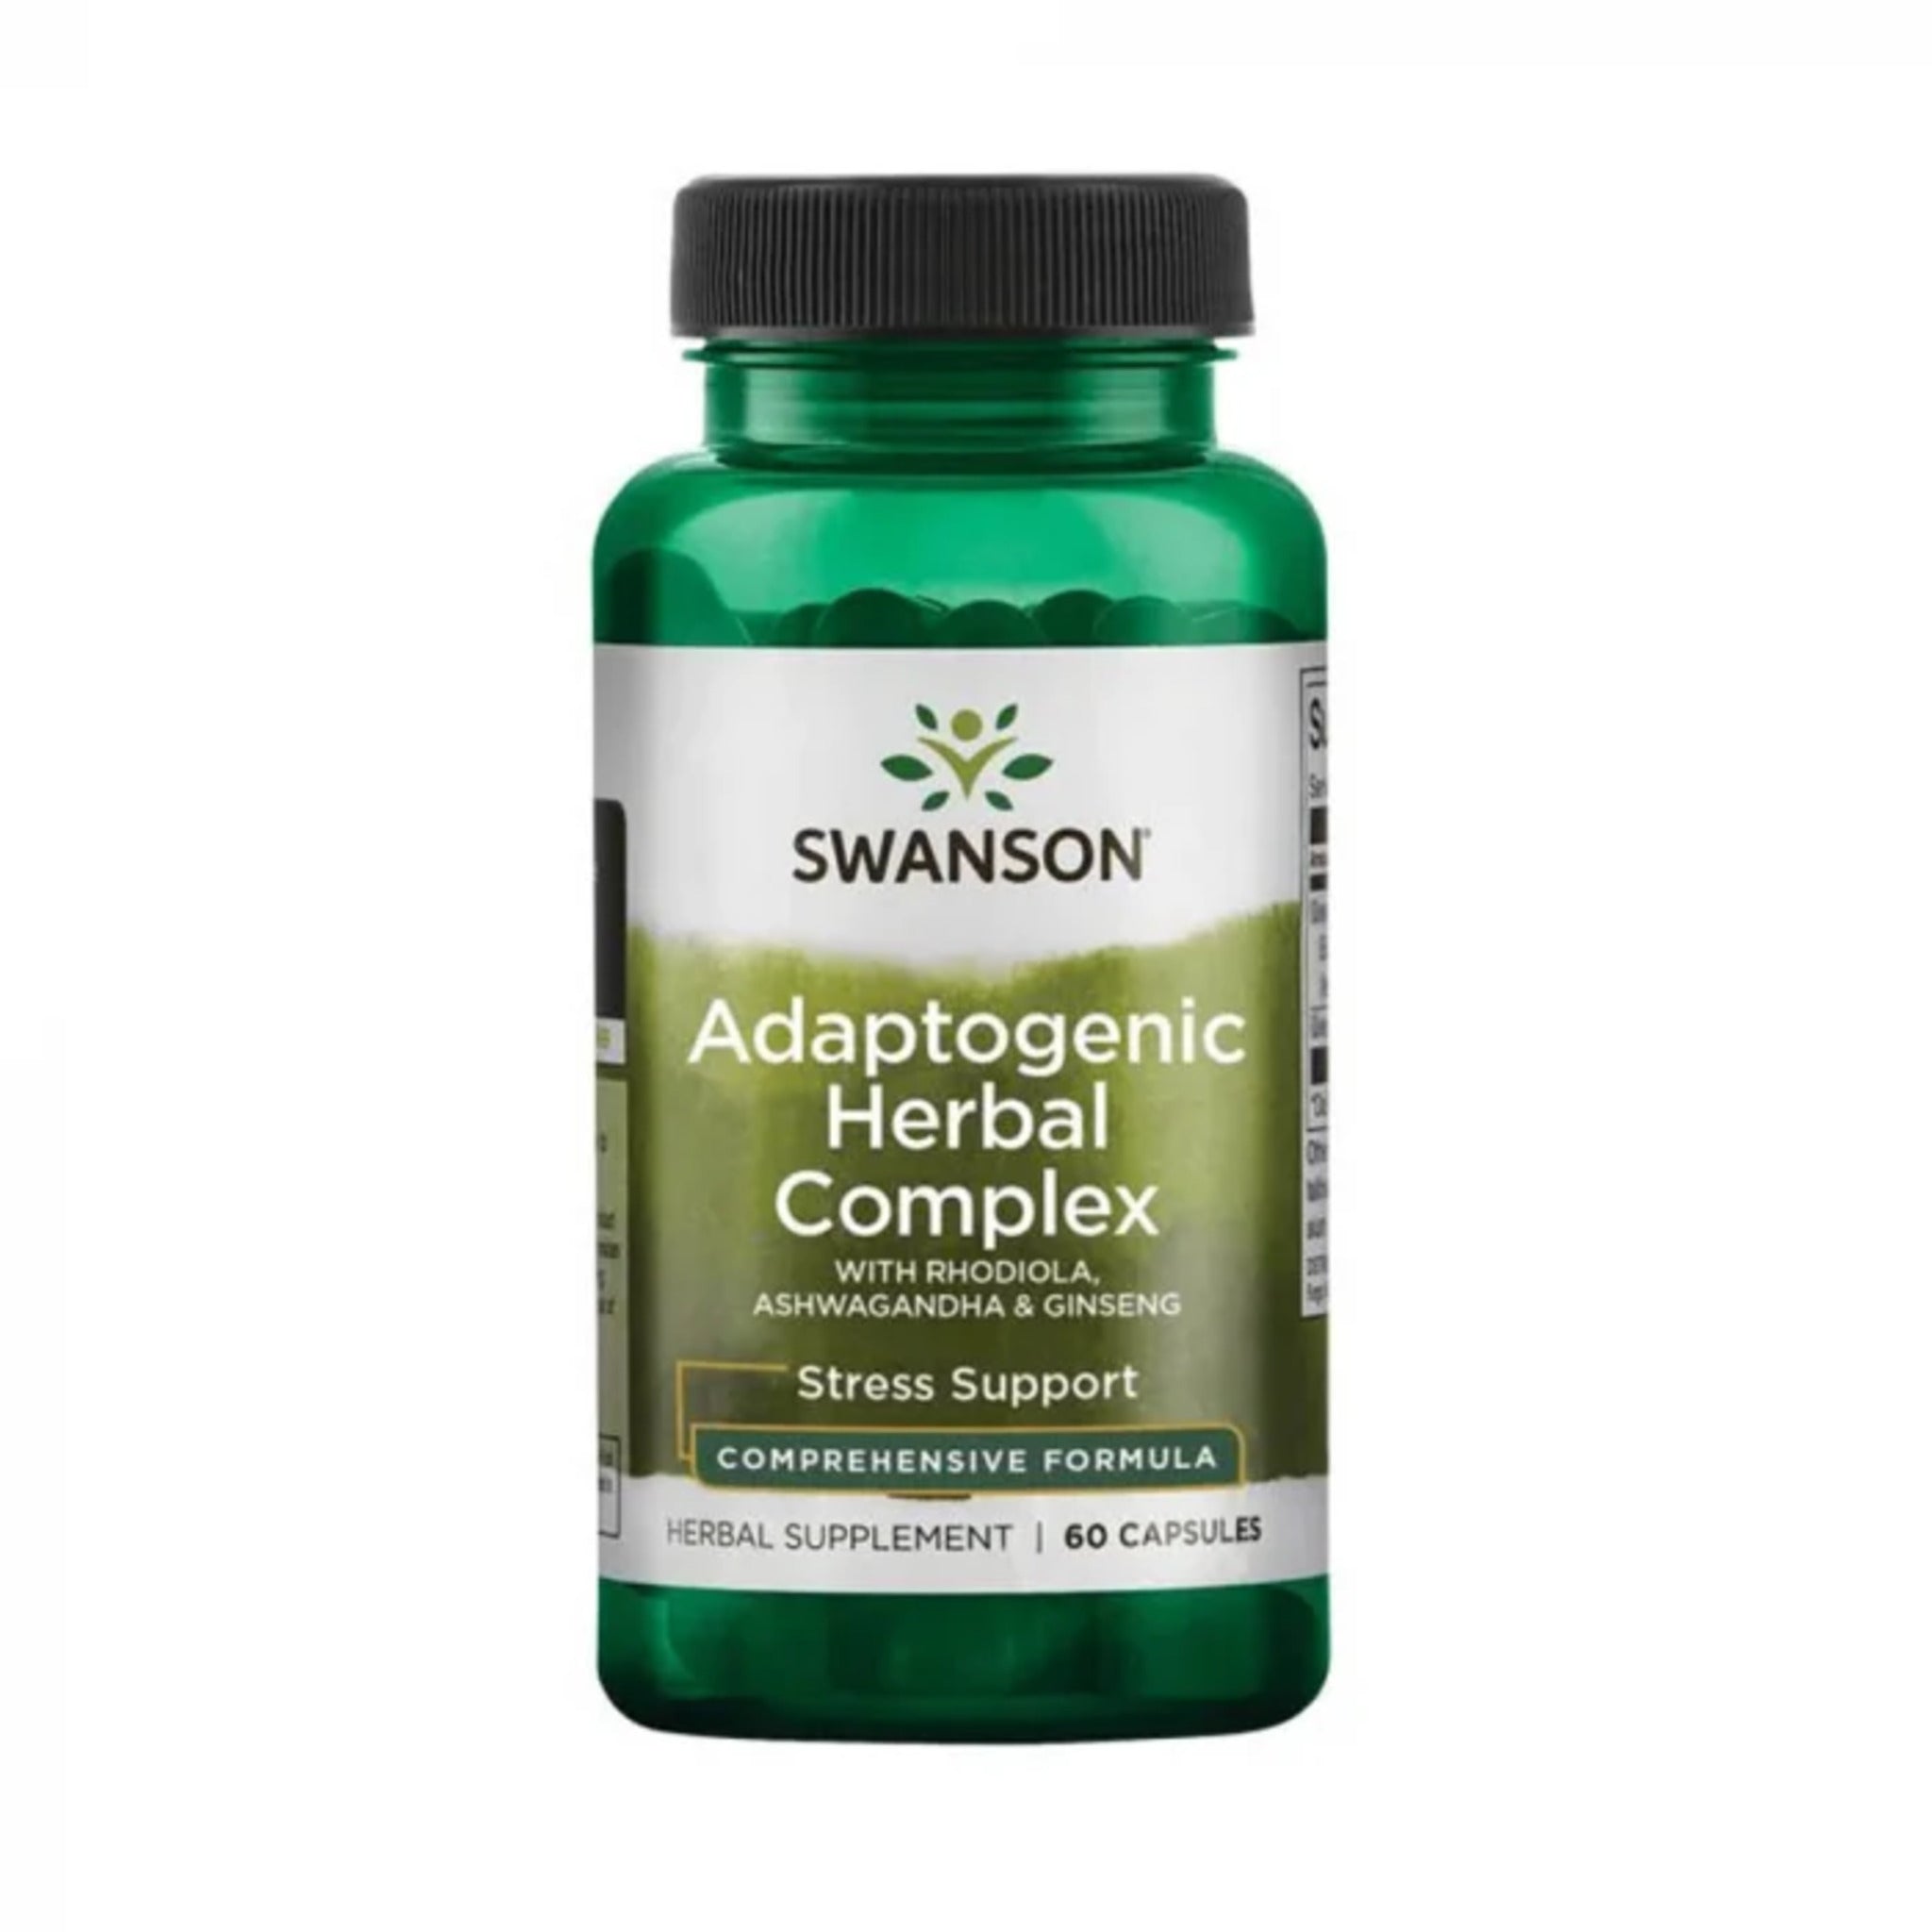 pastile de calmare pe baza de plante Complex Adaptogen Pe Baza De Plante, Swanson, Adaptogenic Herbal Complex, 60caps